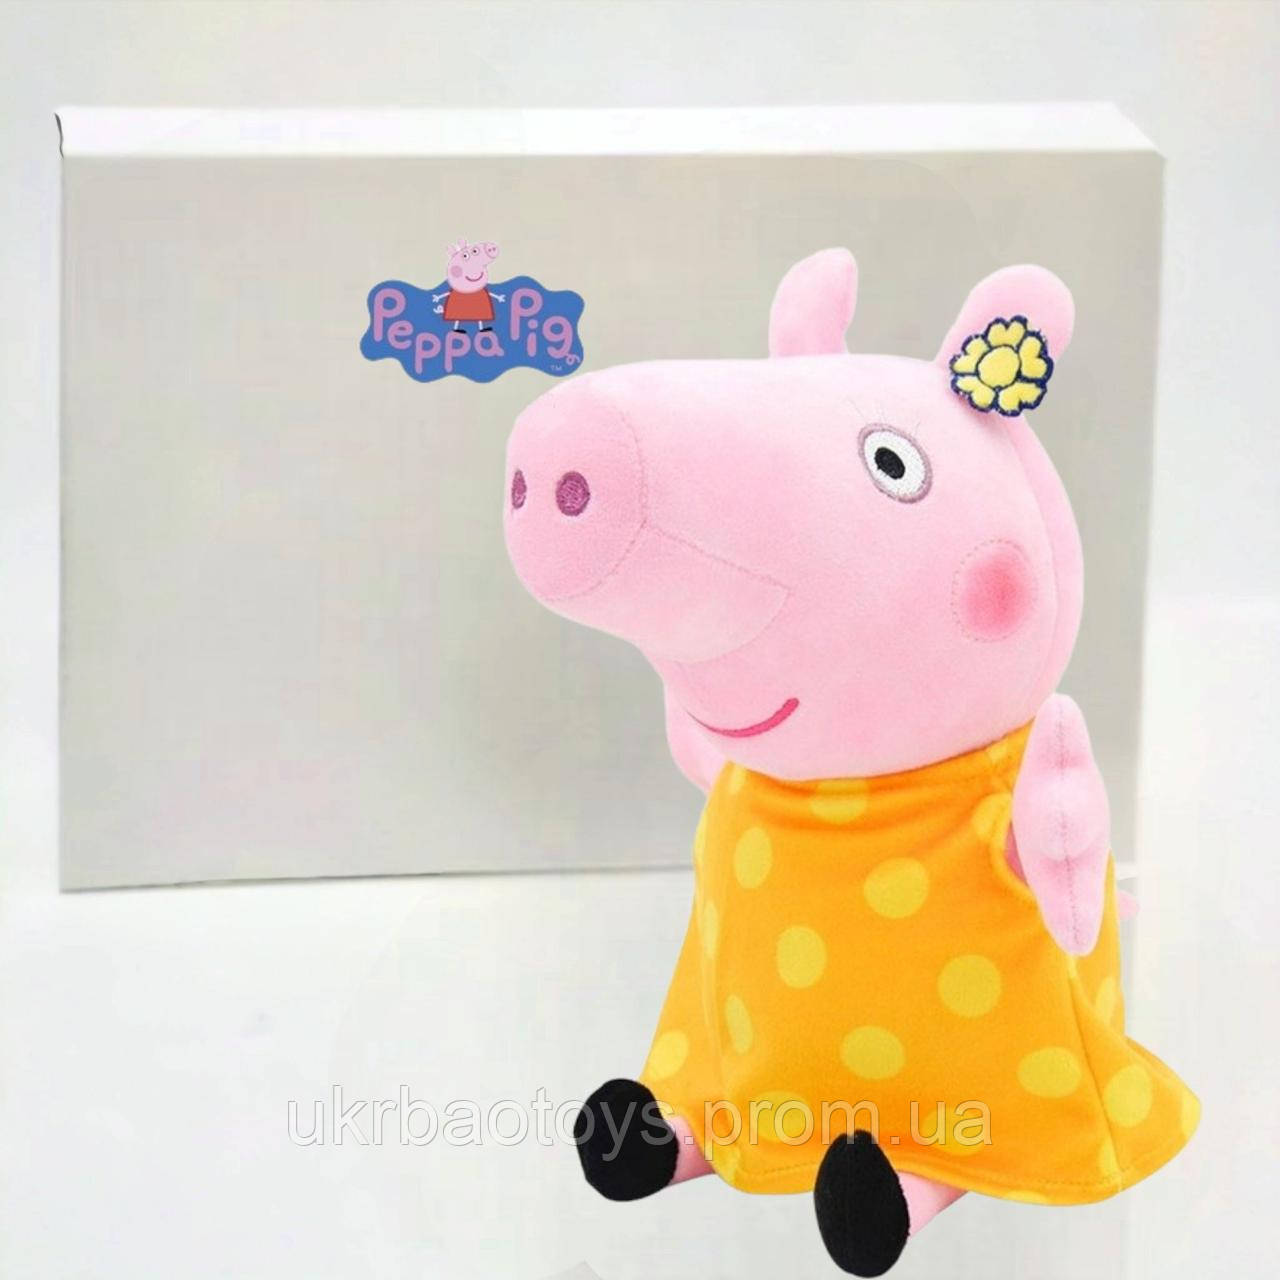 М'яка іграшка Свинка Пеппа (Peppa Pig) в жовтій сукні 25см з ніжками